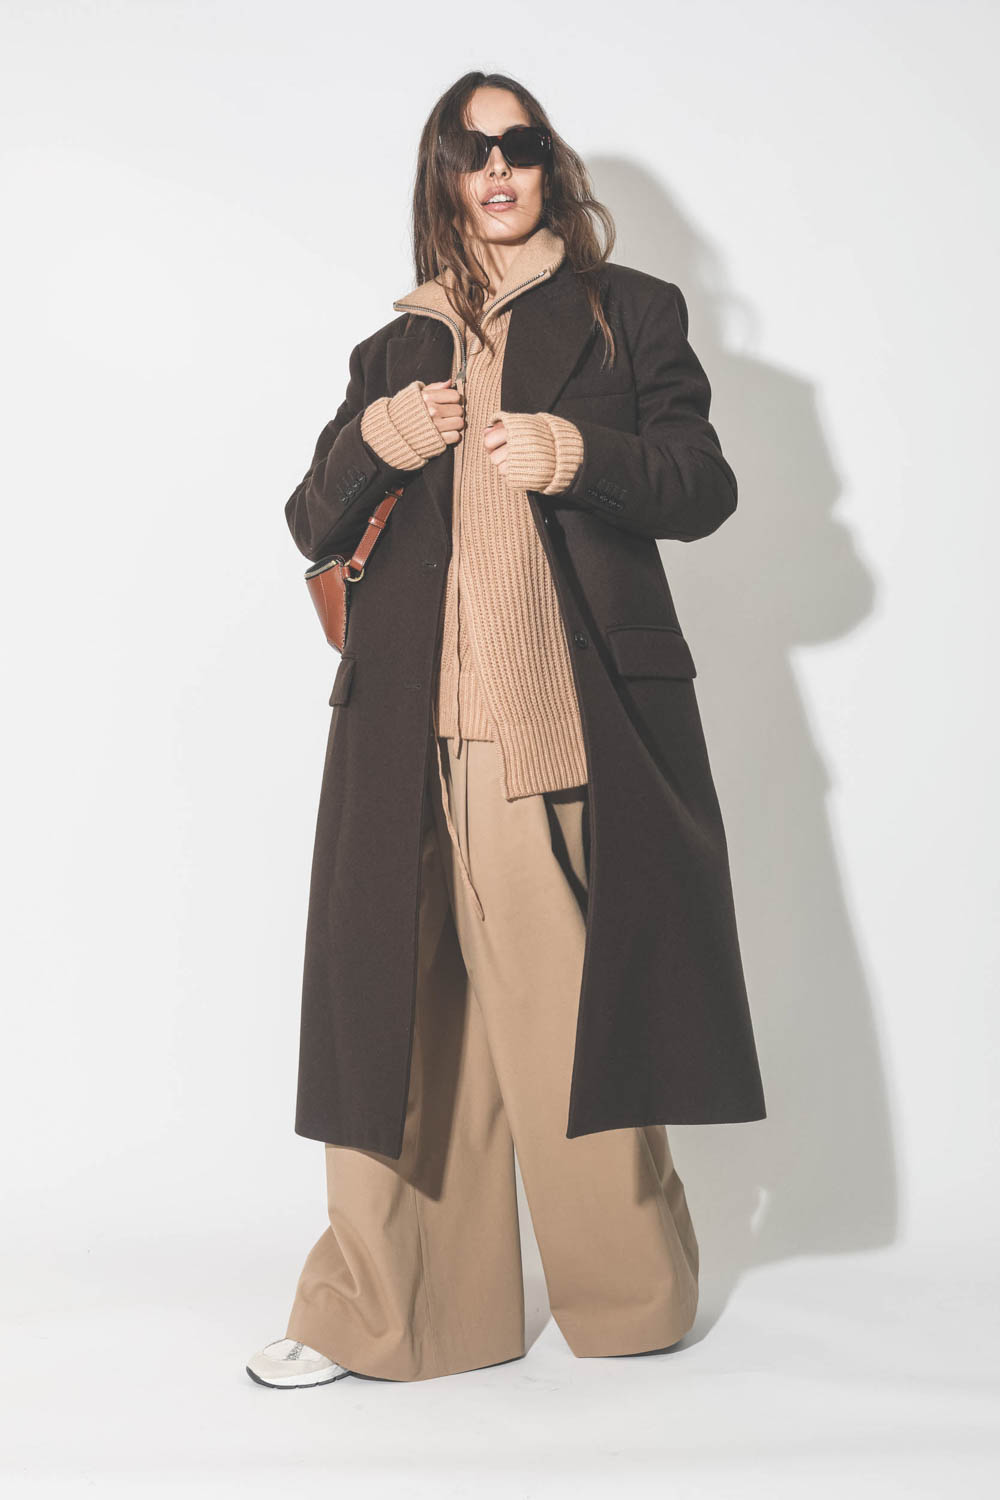 Manteau long en drap de laine marron Maison Flaneur. Porté avec un pantalon large camel.